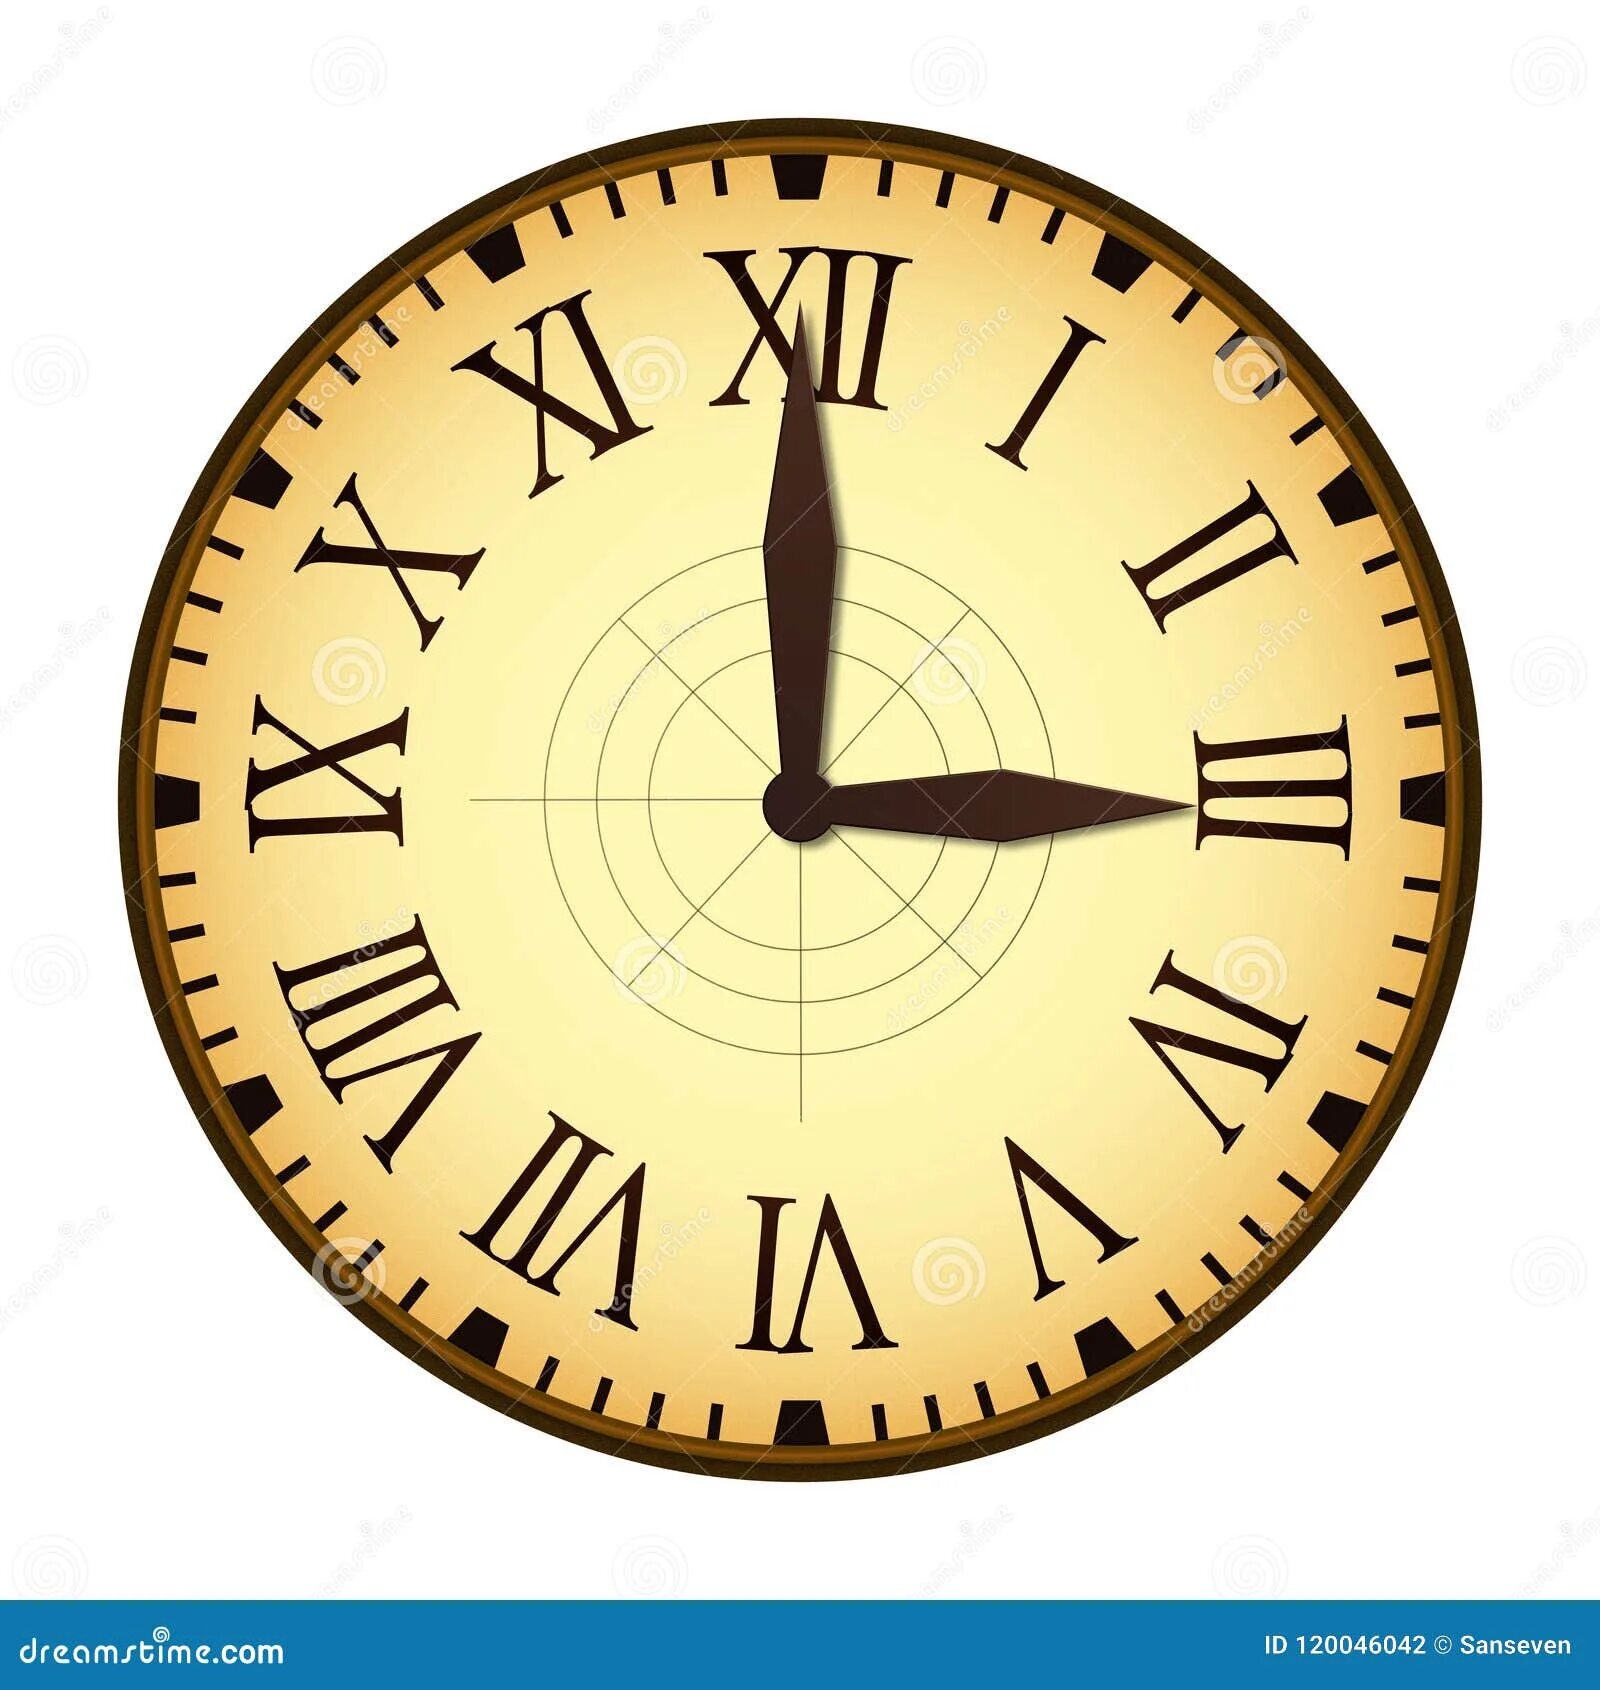 1 55 в минутах. Римские часы. Римские цифры для часов. Римские часы для фотошопа. Часы с римскими цифрами вектор.